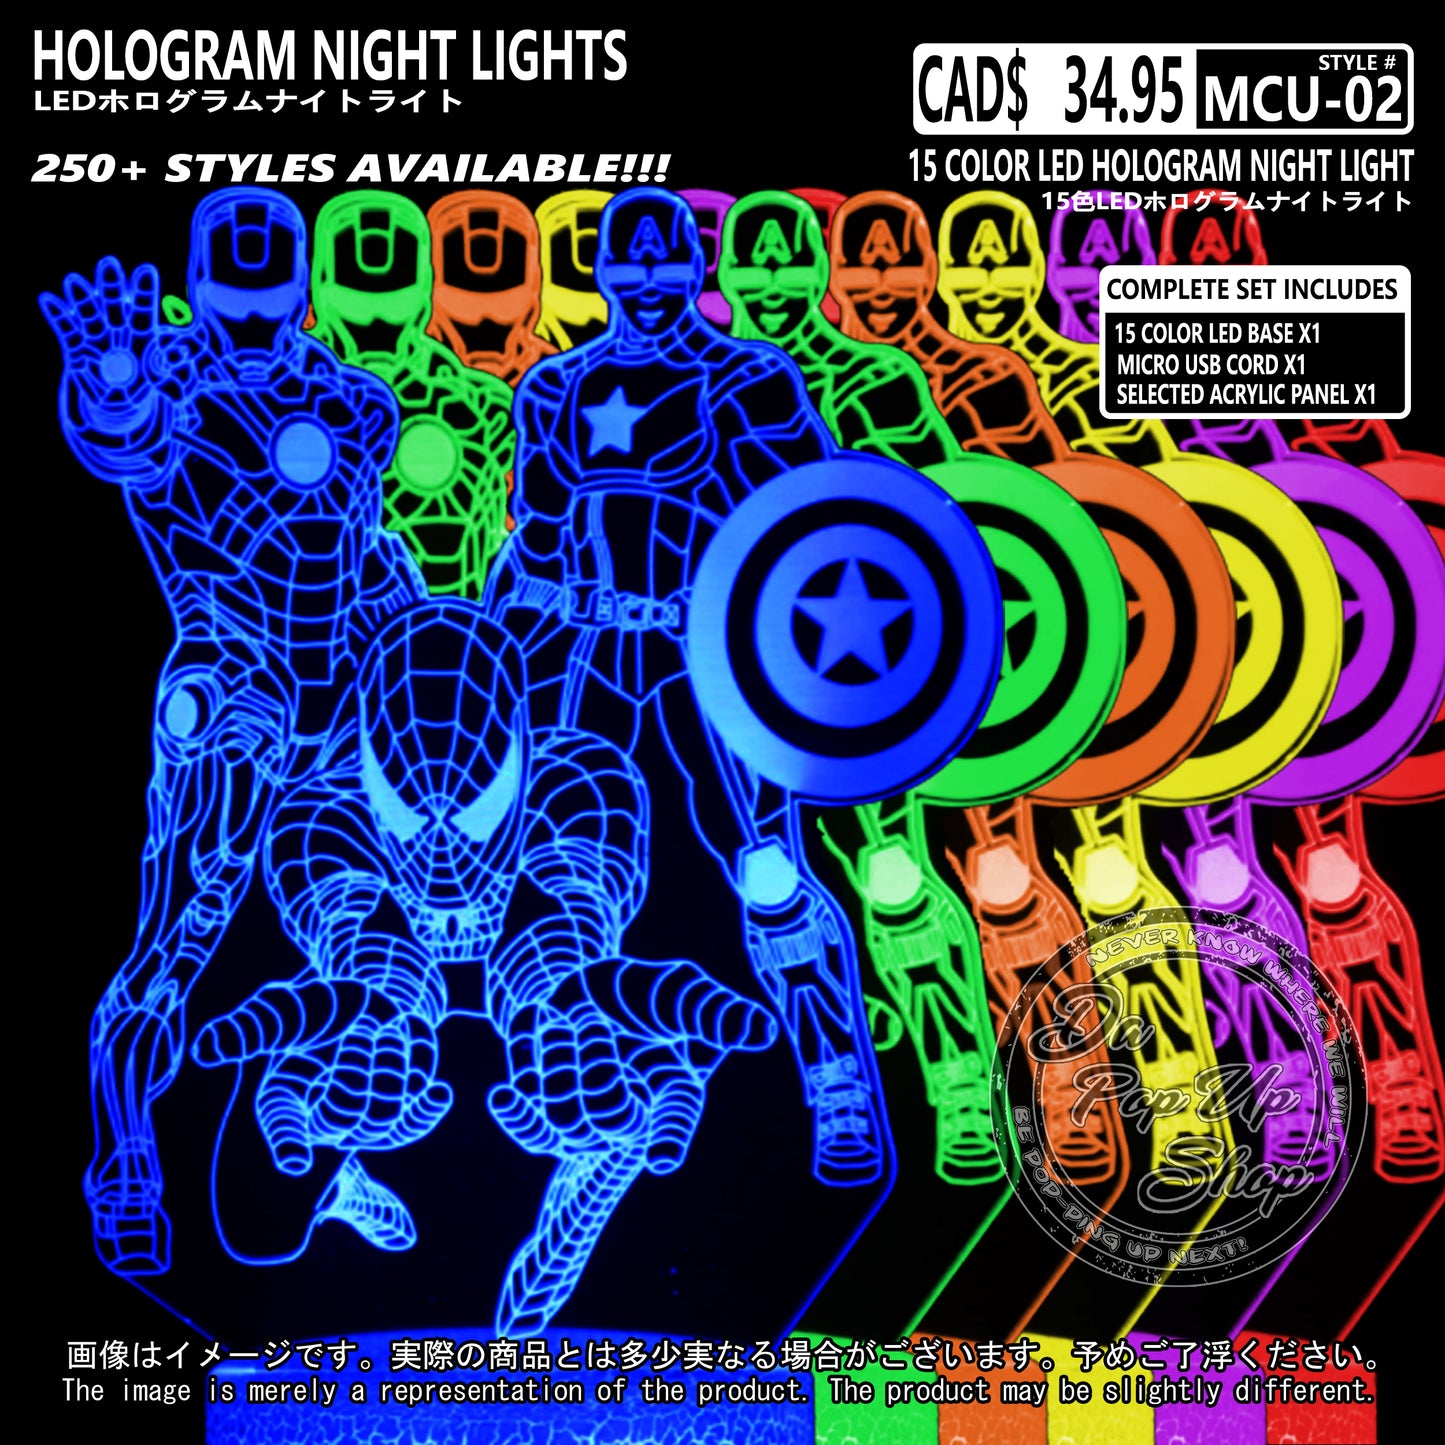 (MCU-02) MCU Marvel Cinematic Universal Hologram LED Night Light